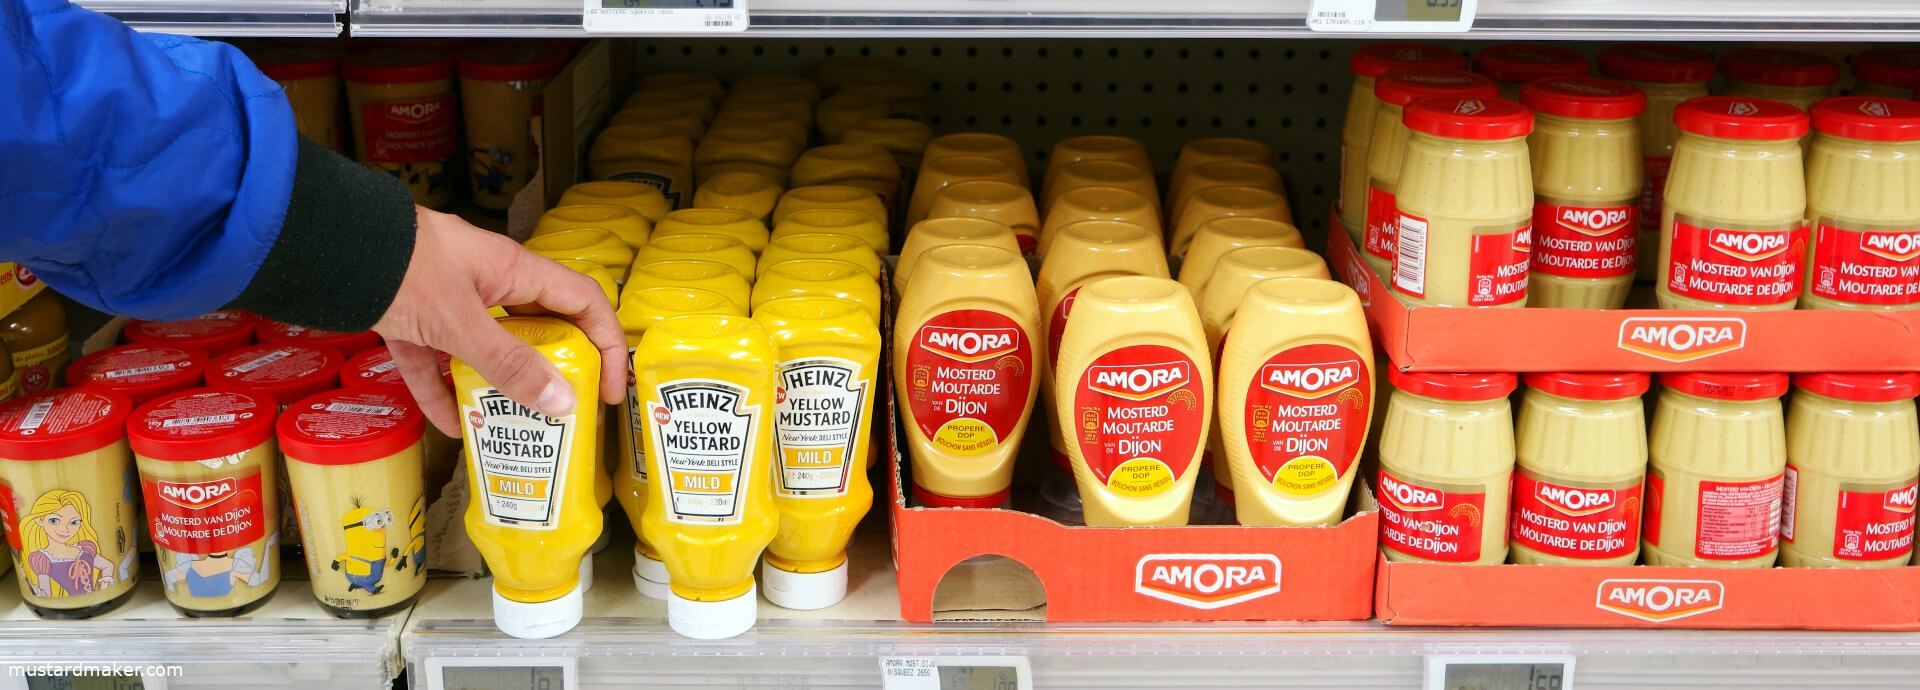 Mustard varieties on sale